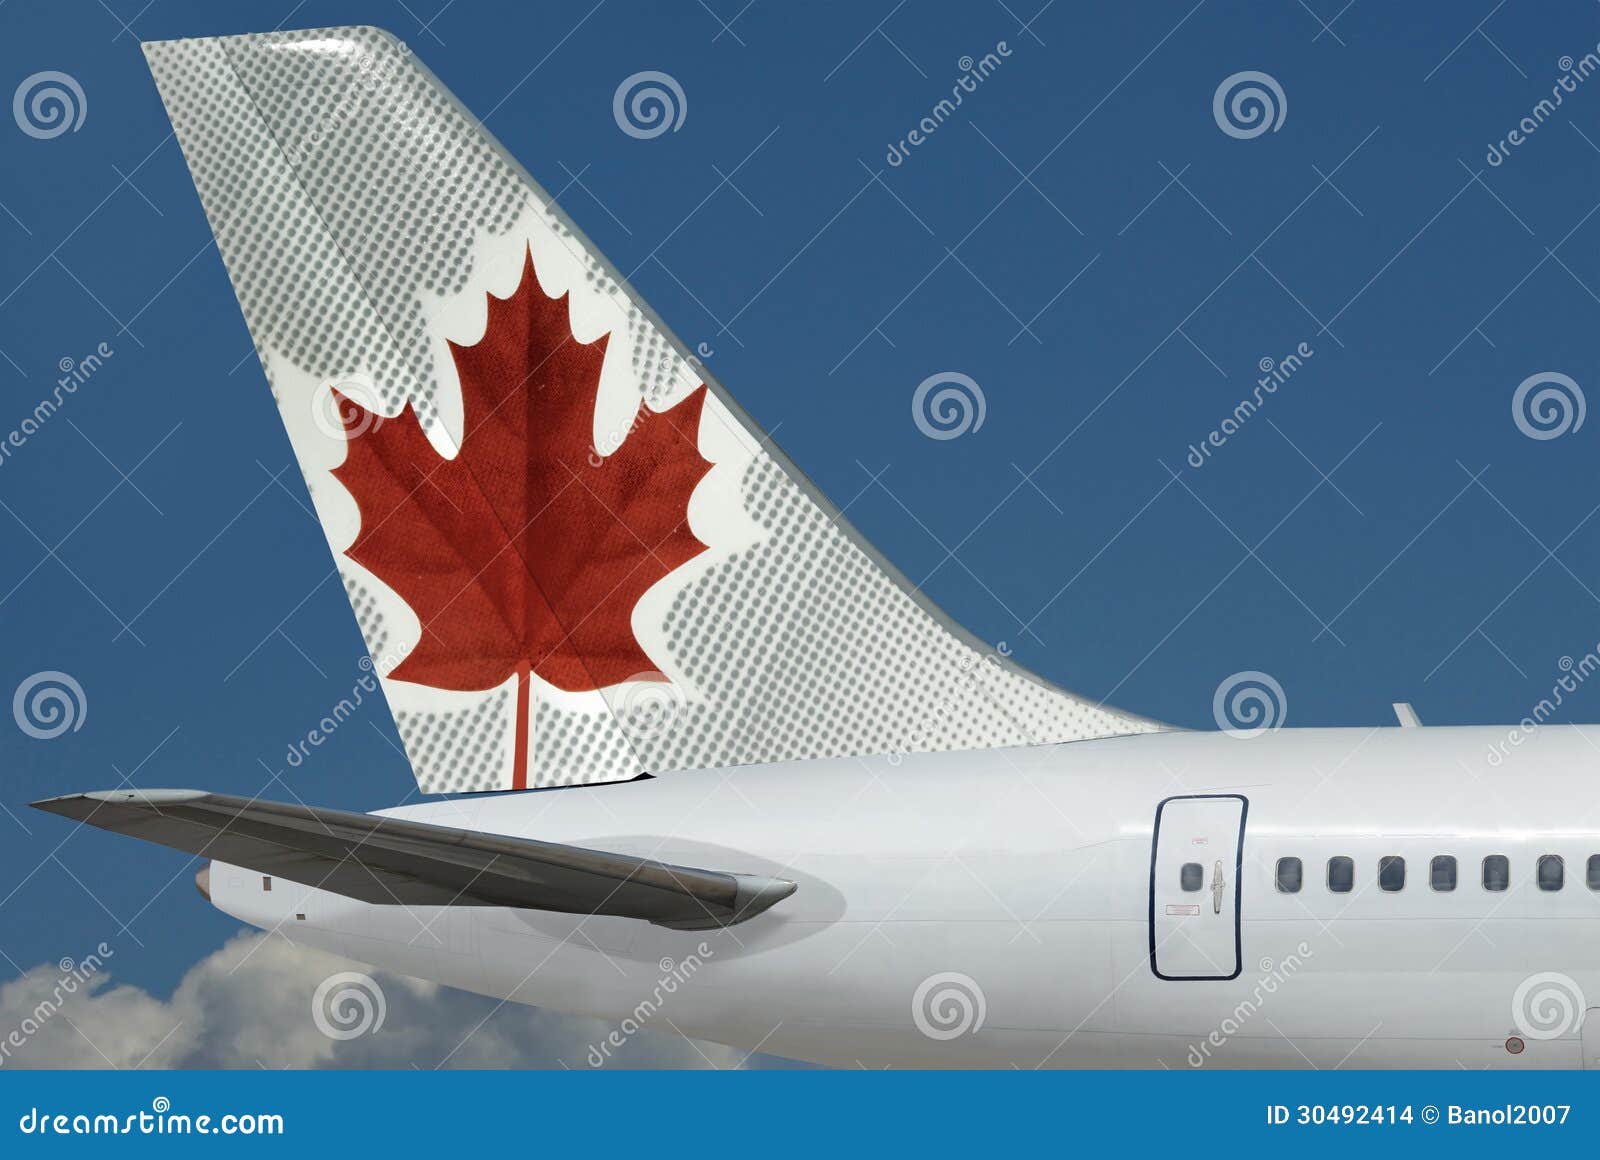 Logo di Air Canada sull'aereo. Cielo. L'aeroplano di Air New Zealand con il logo sulla coda è primo piano sul bello fondo del cielo blu. L'area del cielo è libera per il vostro testo.